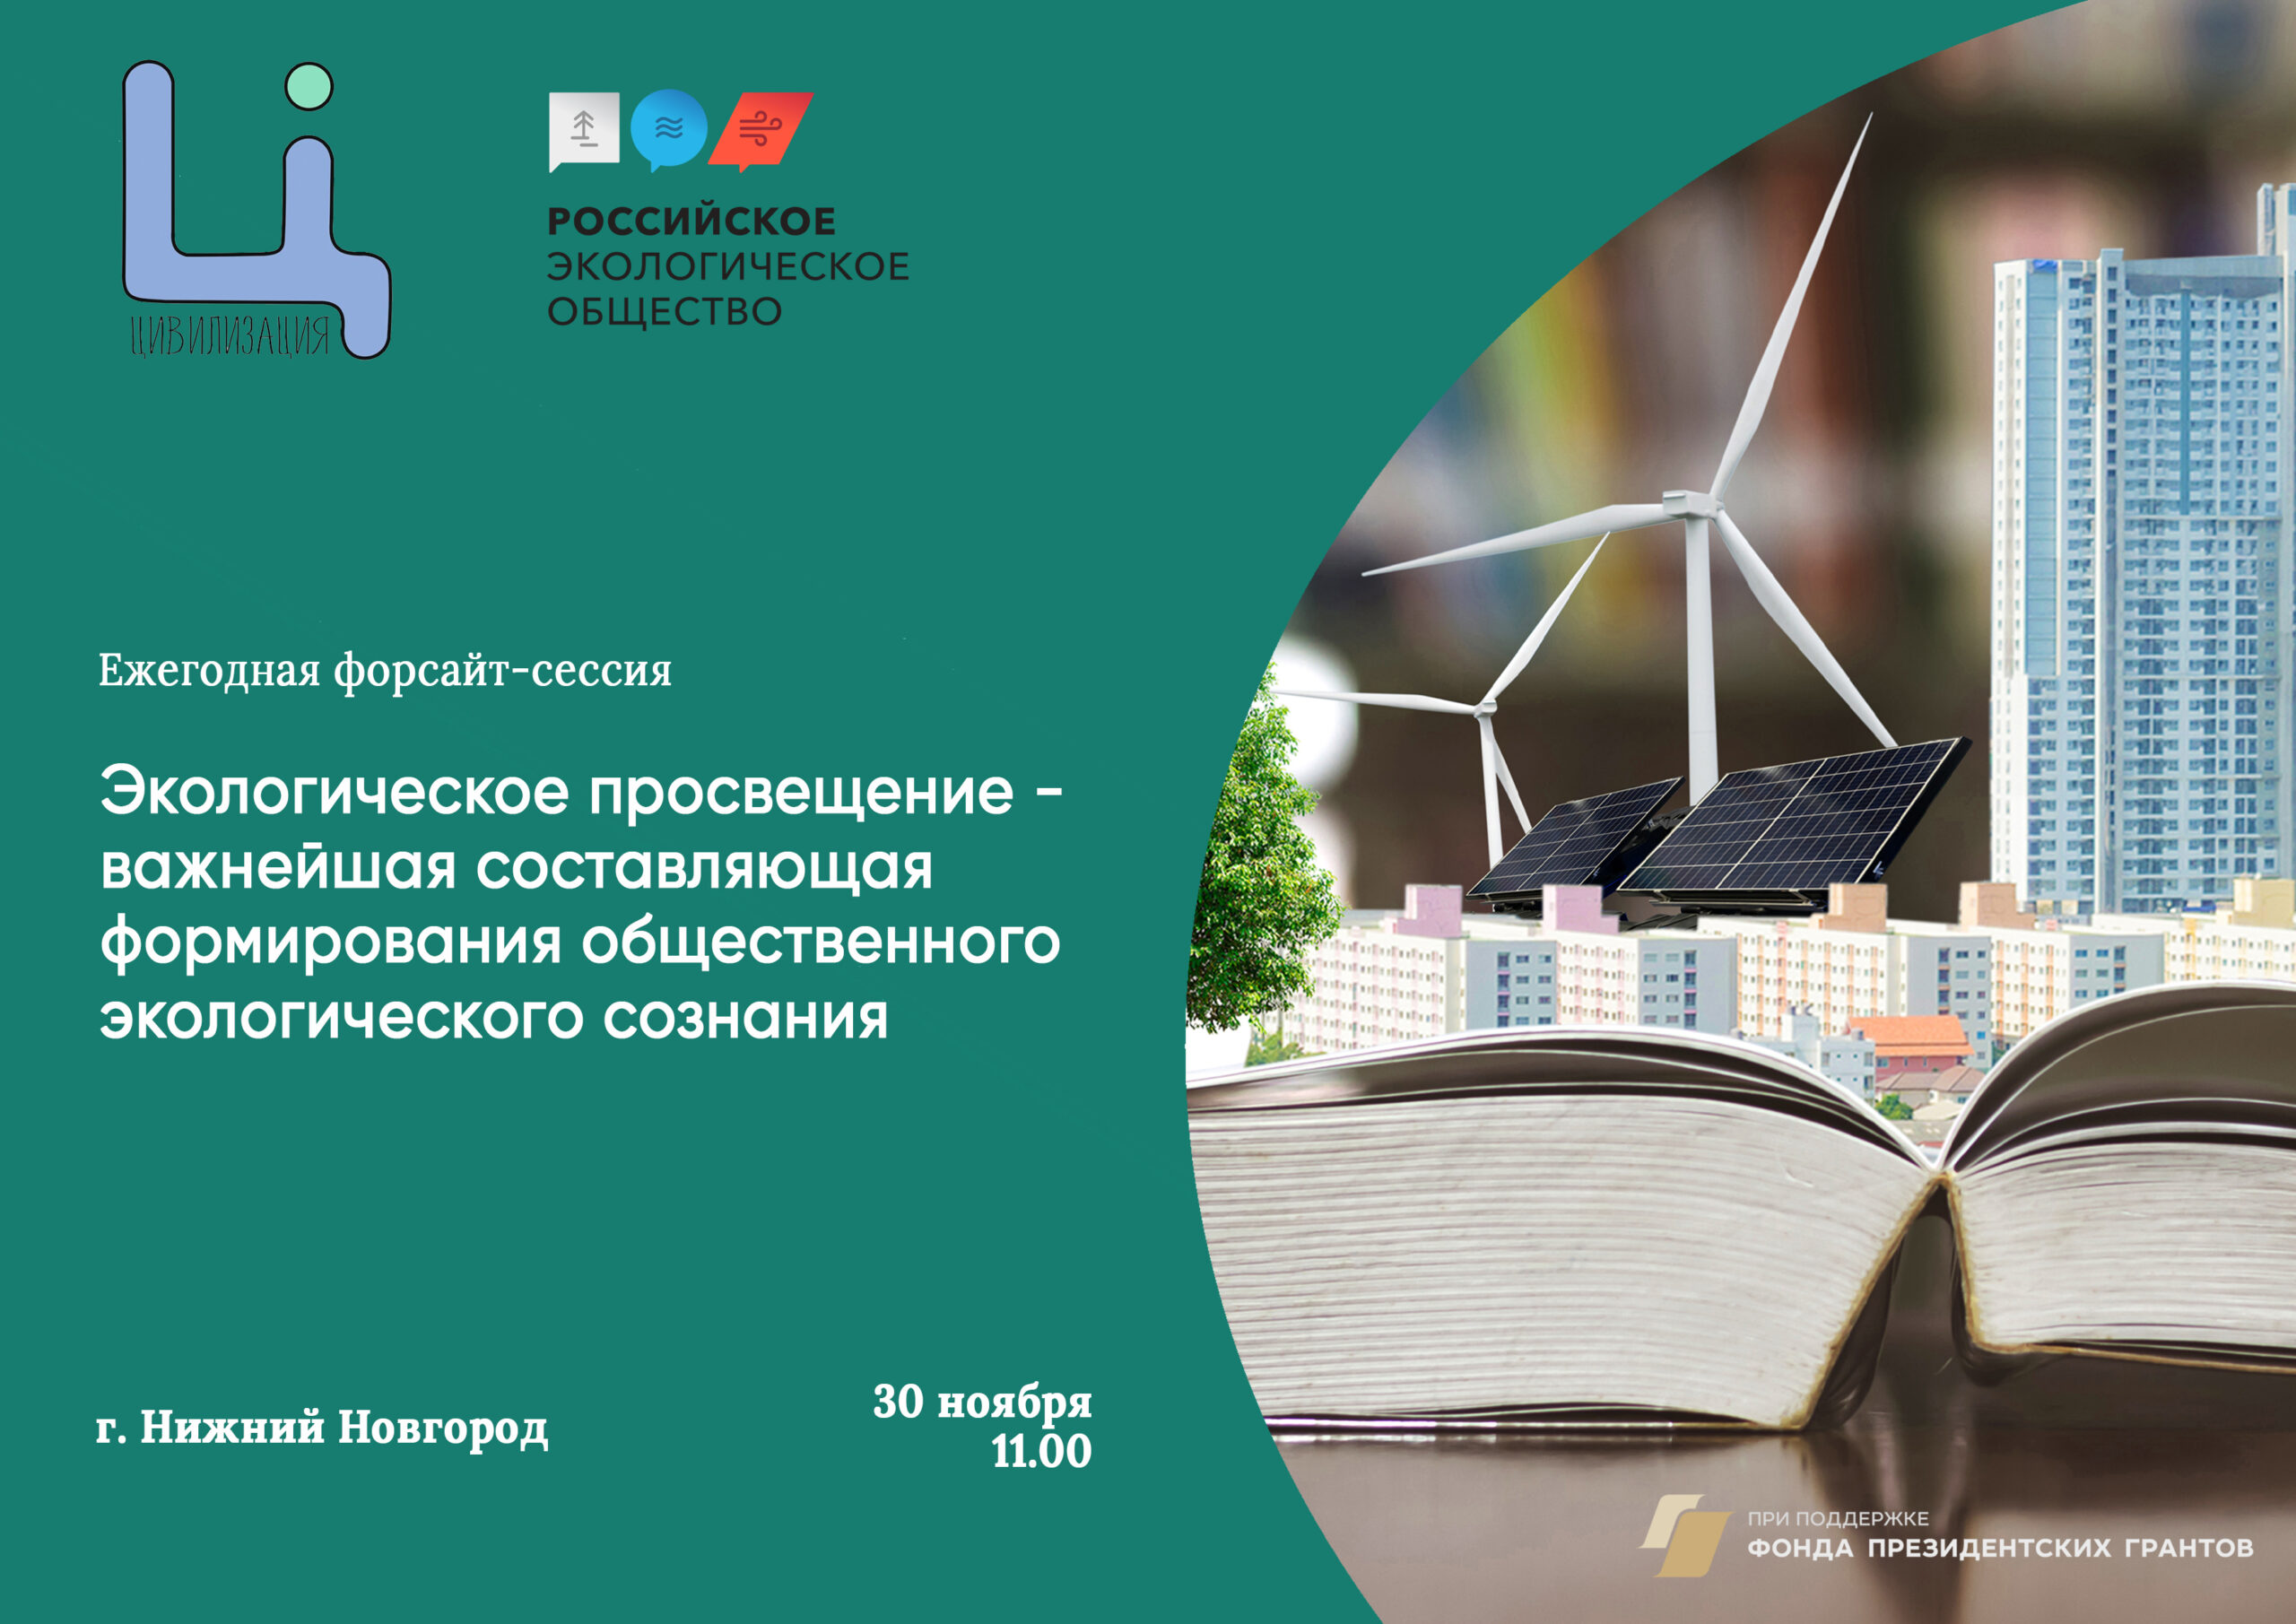 Ежегодный форсайт по теме экологического просвещения пройдет в конце ноября в городе Нижнем Новгороде